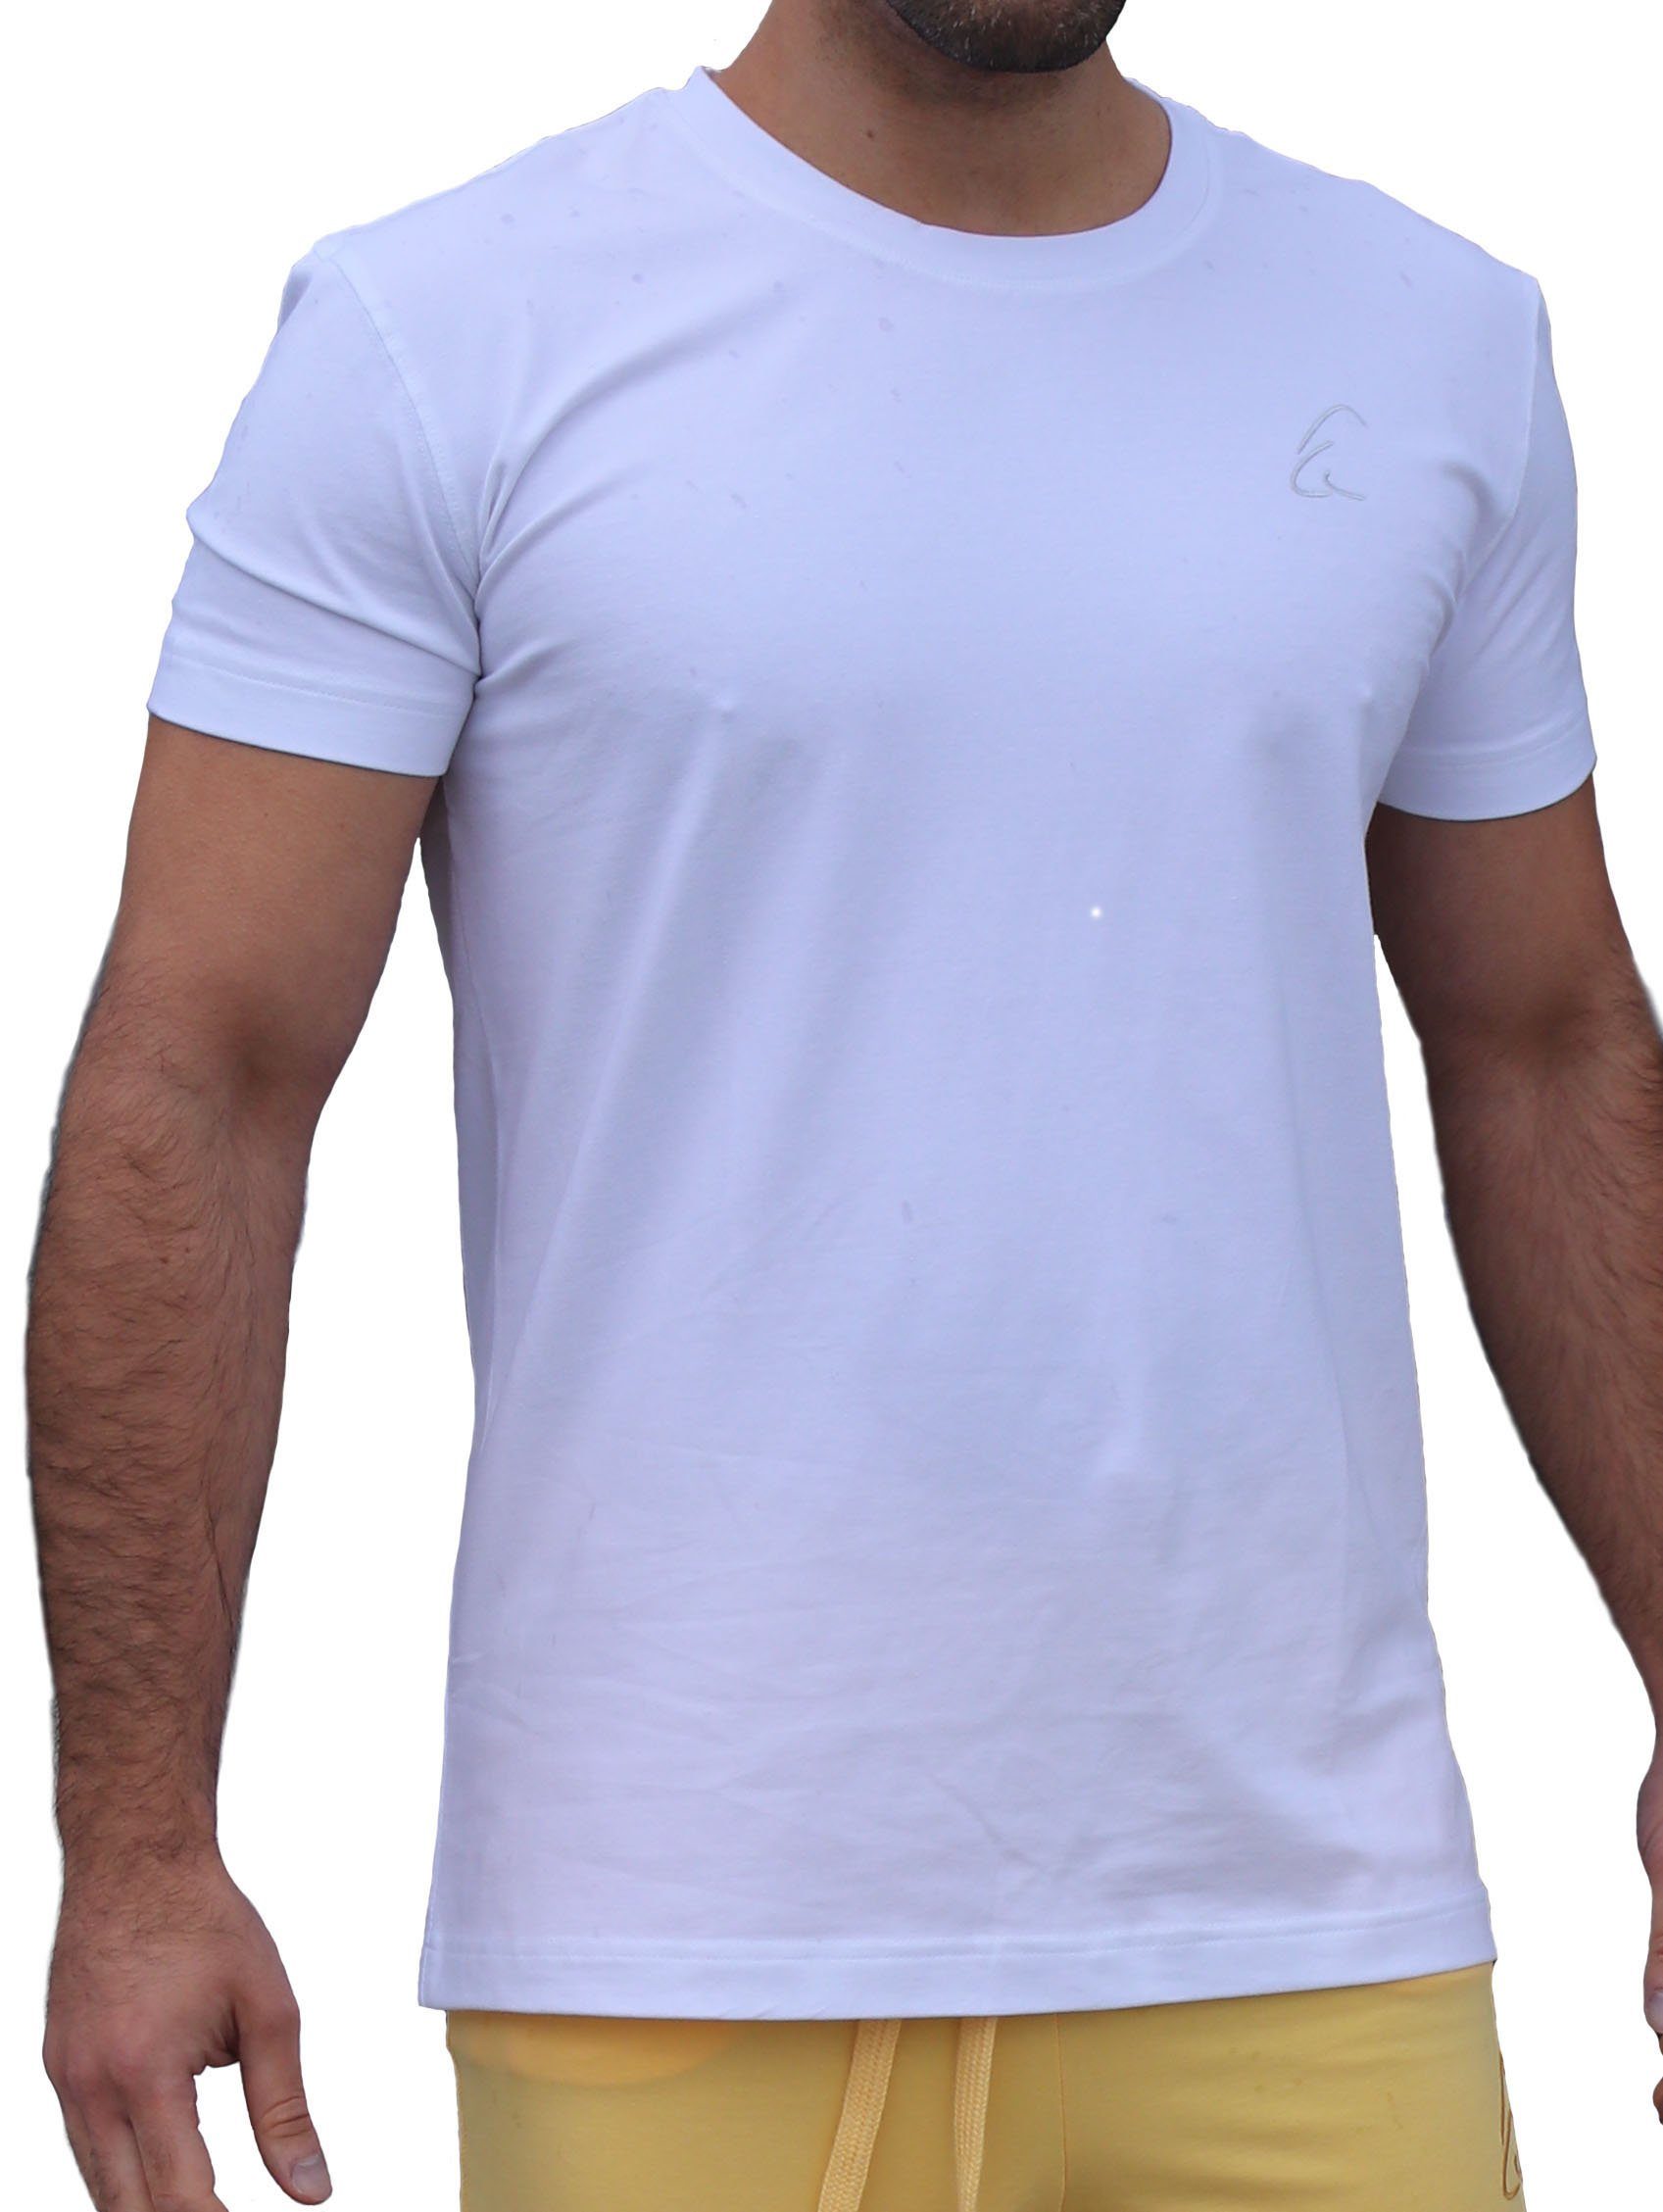 Bhaalu ESPARTO leicht kühlend, Sommer T-Shirt Herren im Yogashirt Schneeweiß geeignet auch unisex, gut für